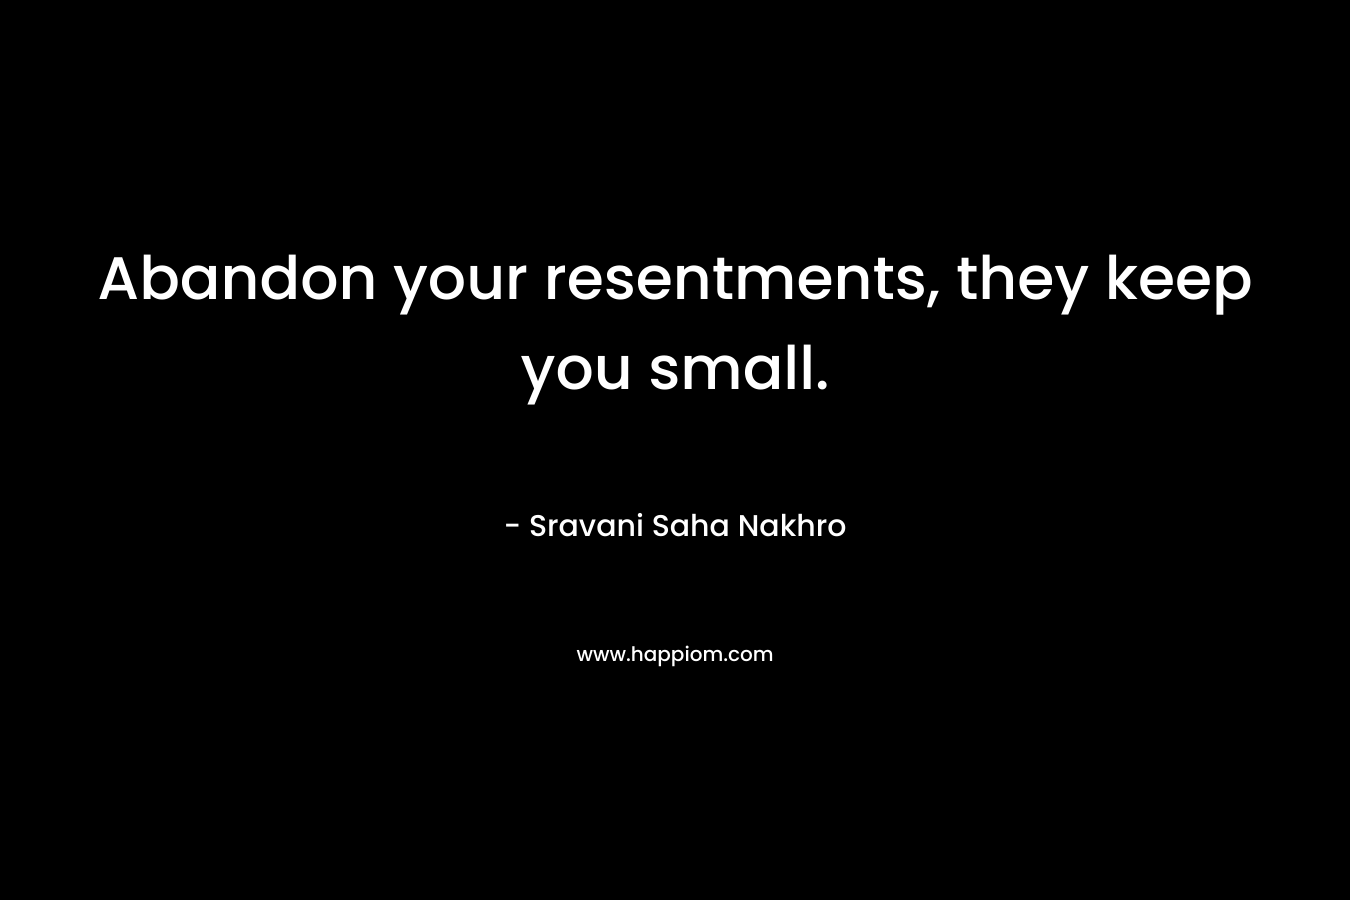 Abandon your resentments, they keep you small. – Sravani Saha Nakhro